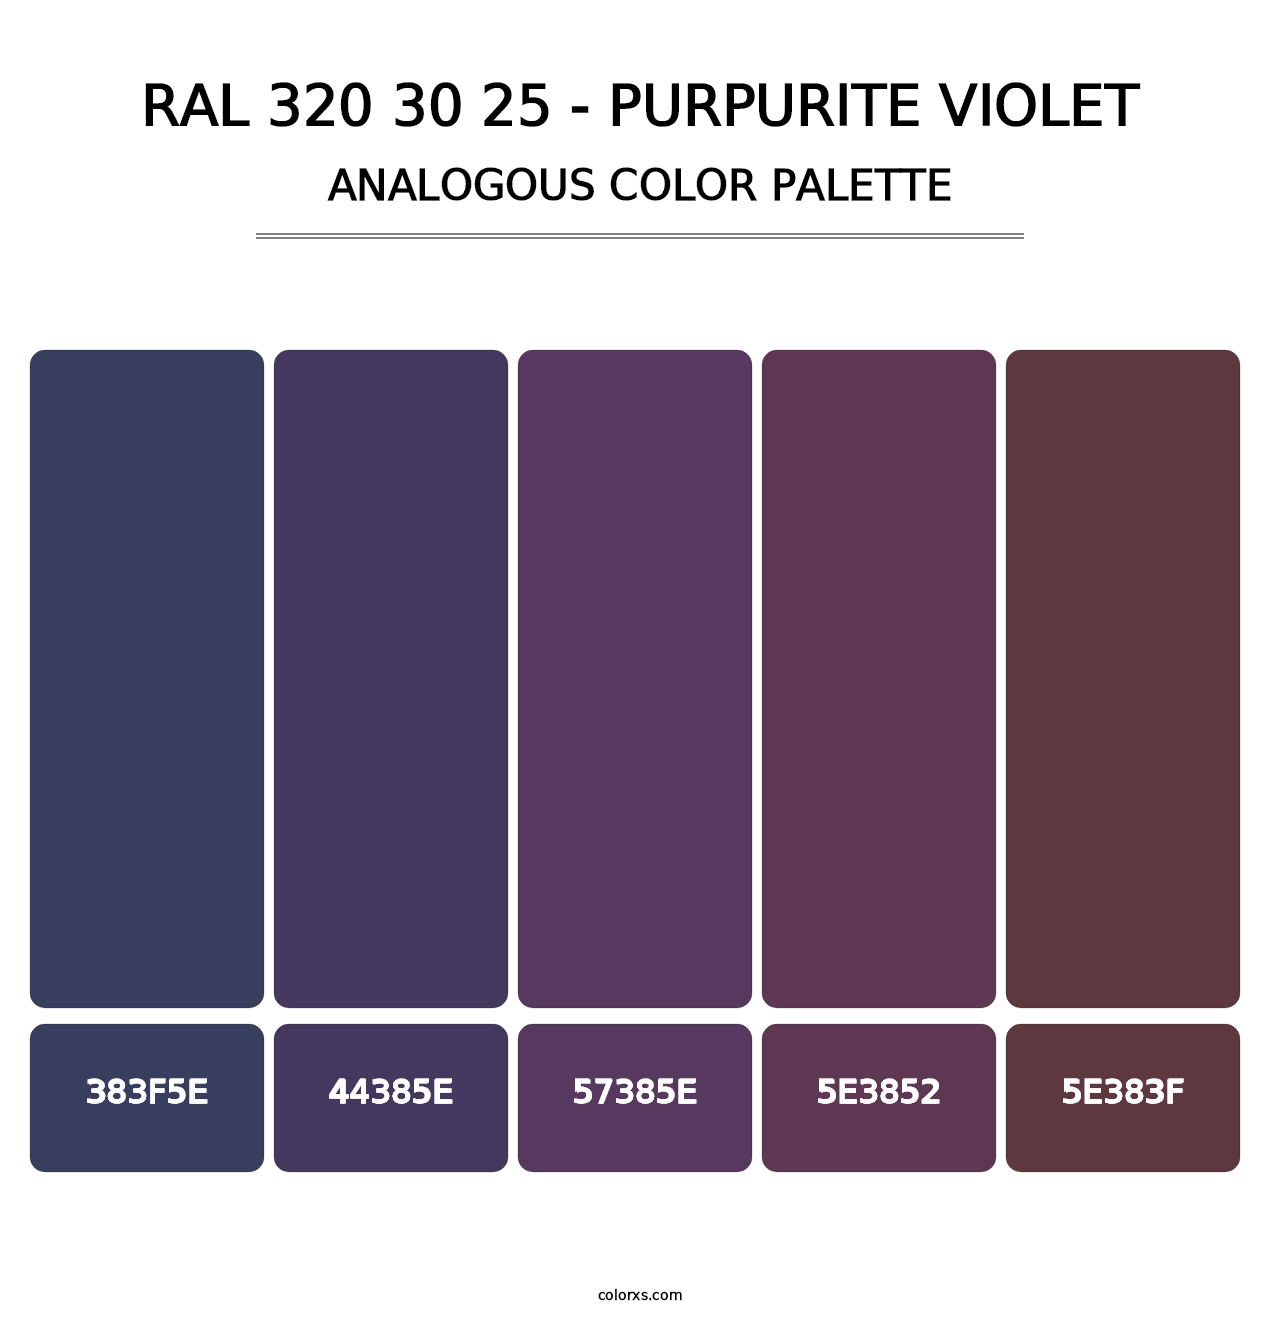 RAL 320 30 25 - Purpurite Violet - Analogous Color Palette